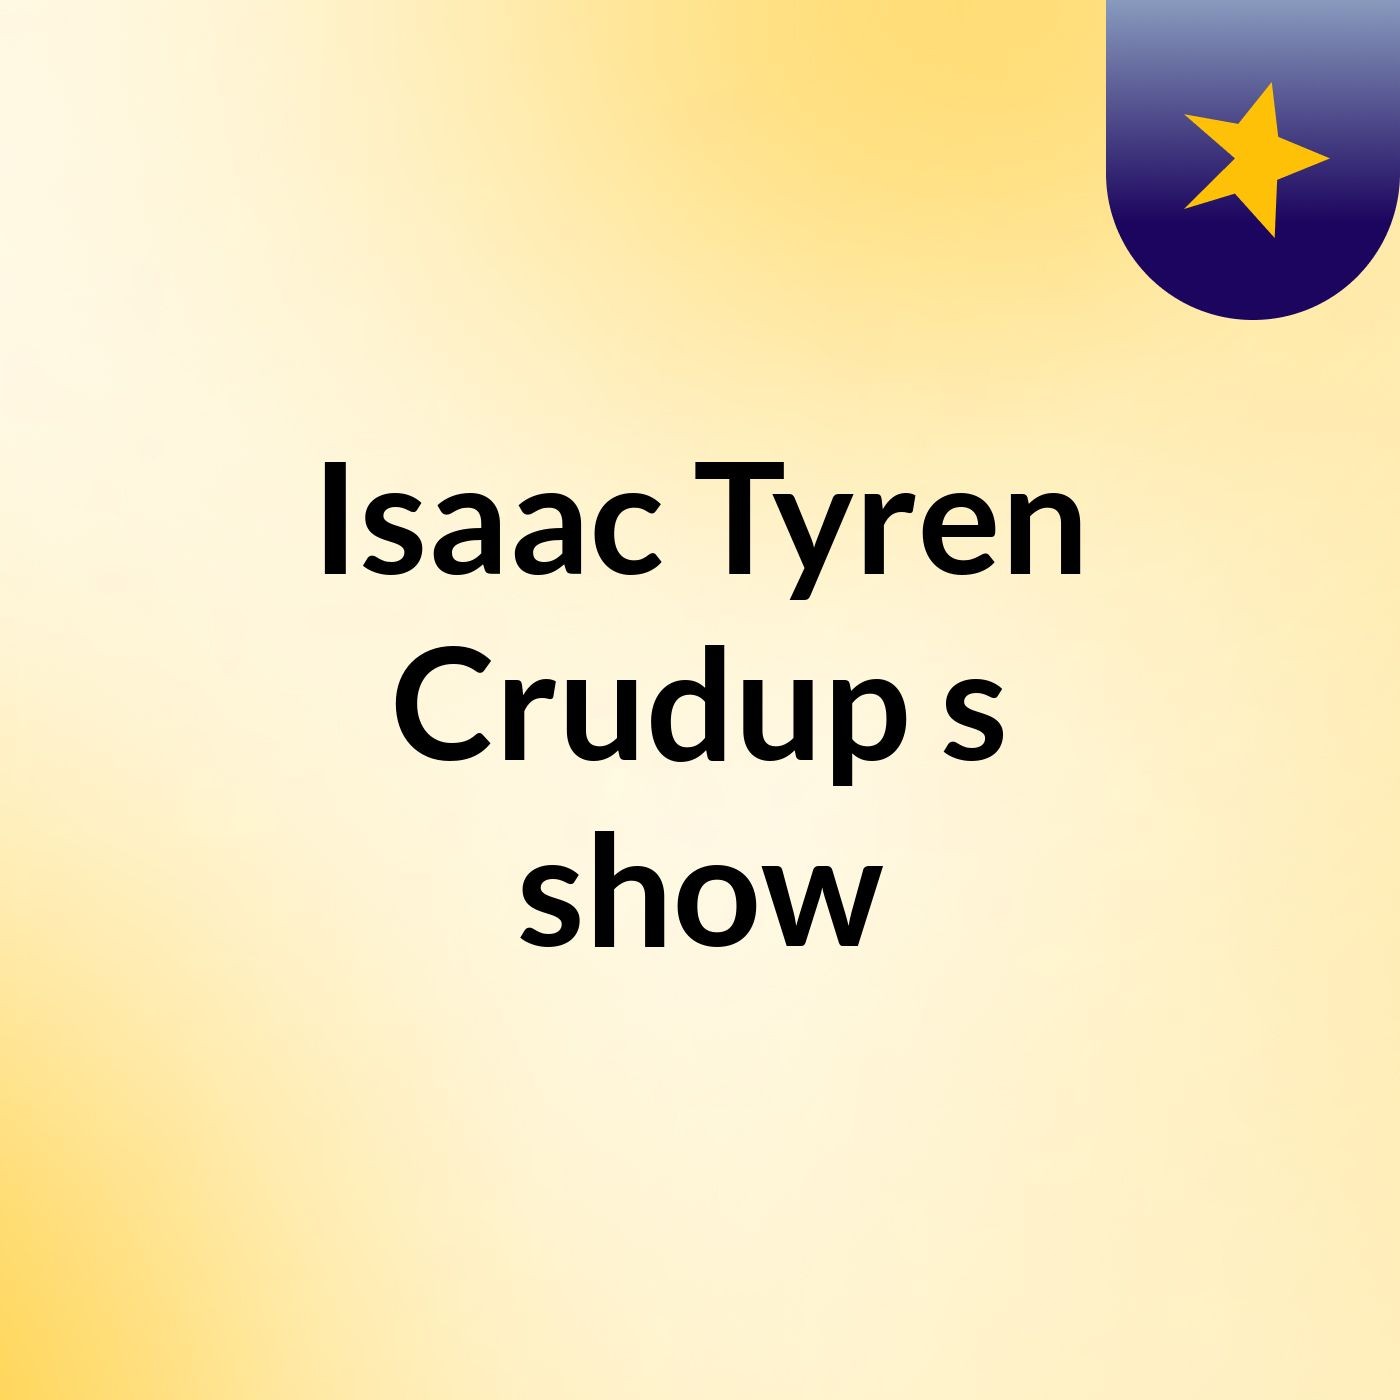 Isaac Tyren Crudup's show